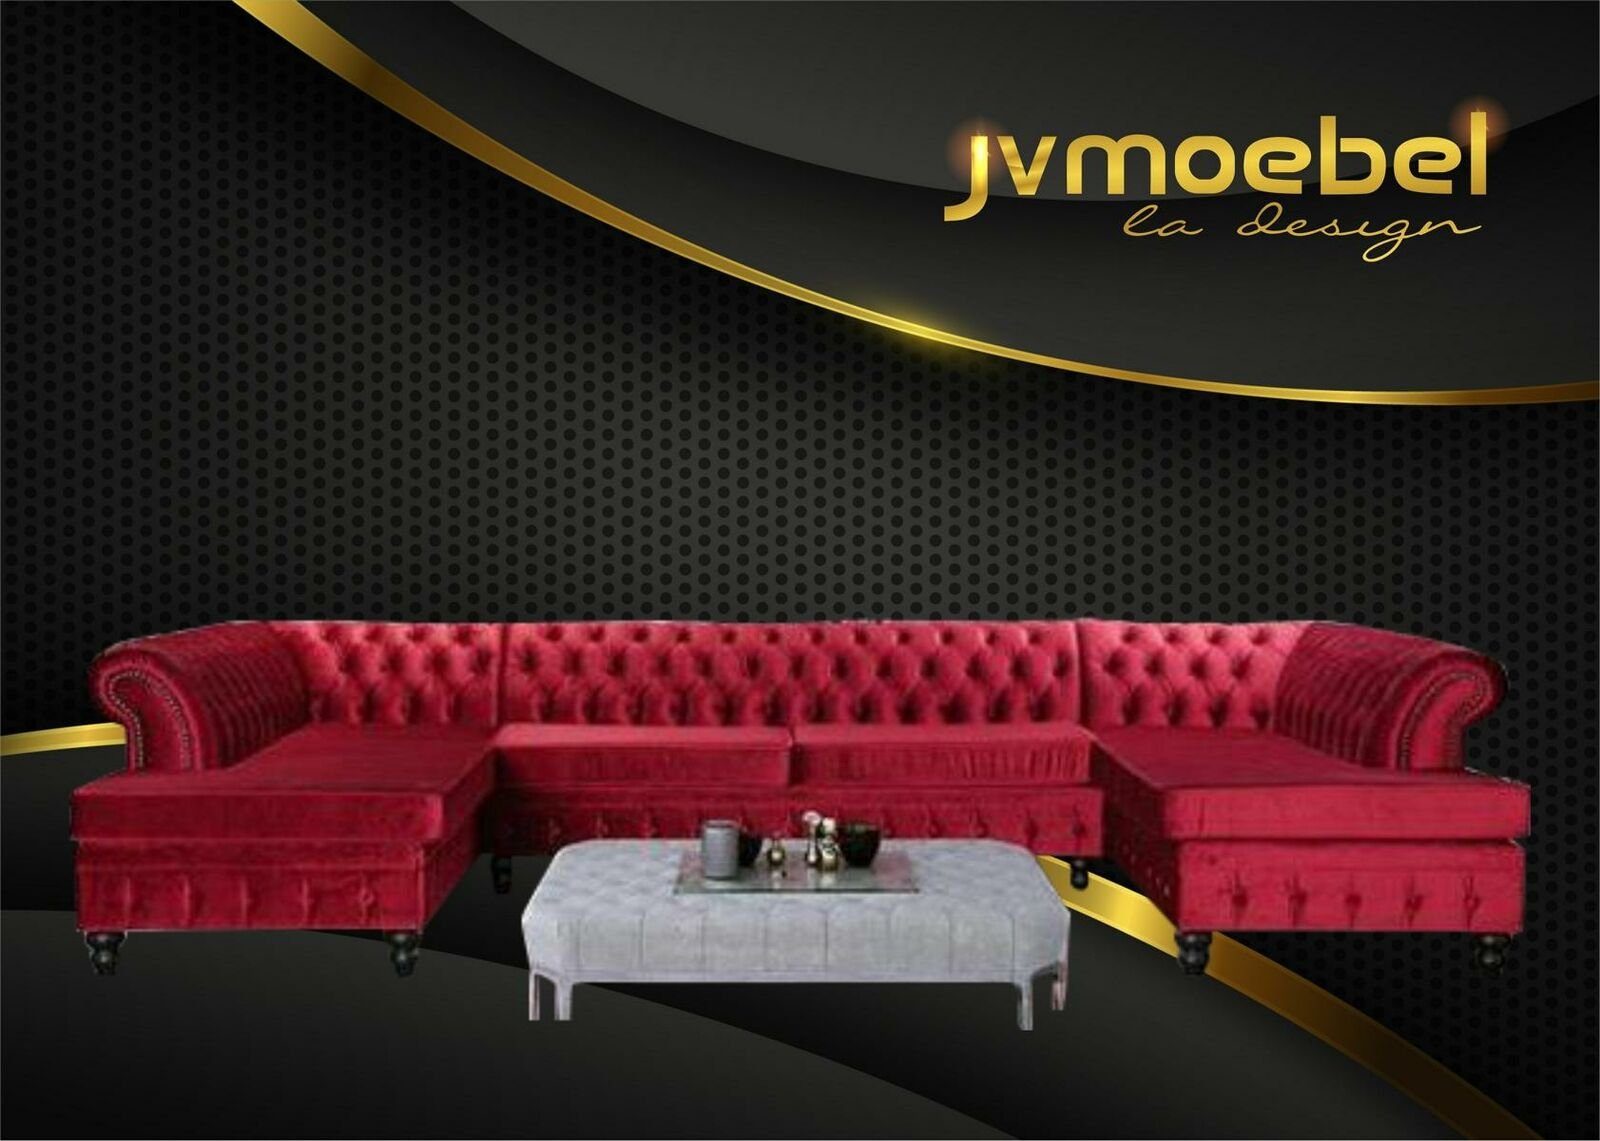 JVmoebel Ecksofa, Set Luxury Modern Ecksofa U-Form Chesterfield und Couchtisch Rot/Hellgrau